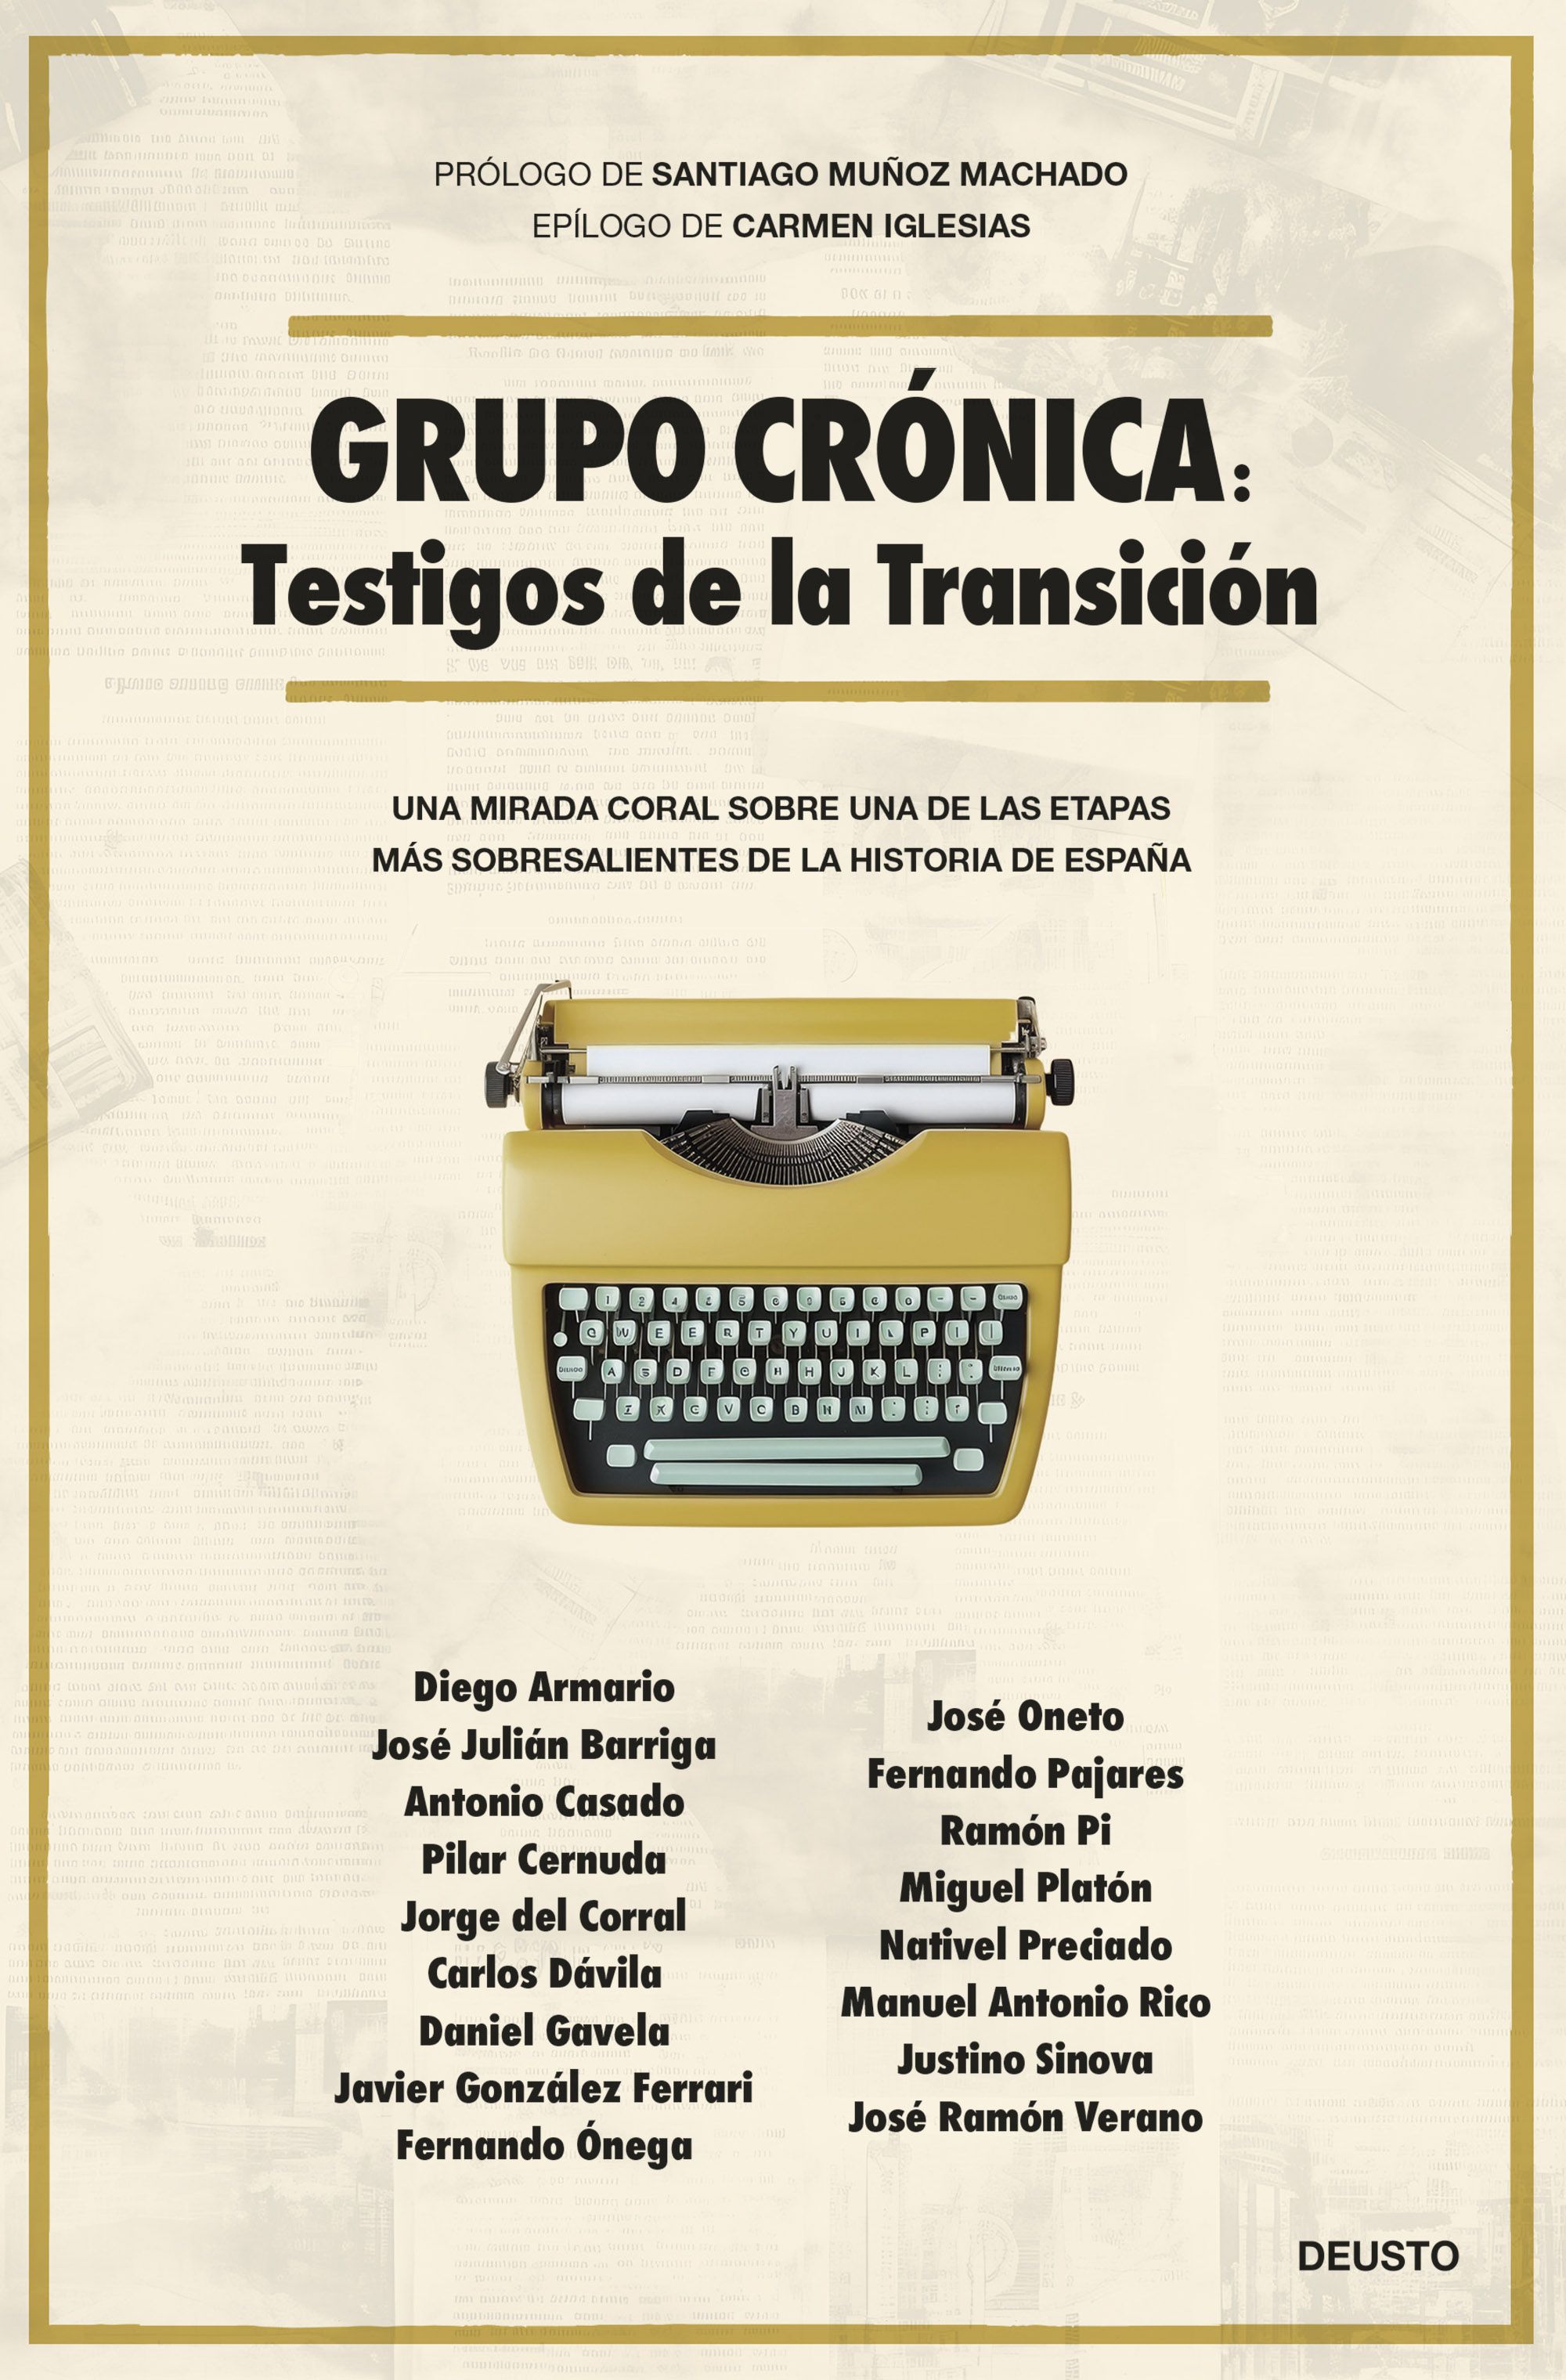 Imagen de portada del libro Grupo Crónica